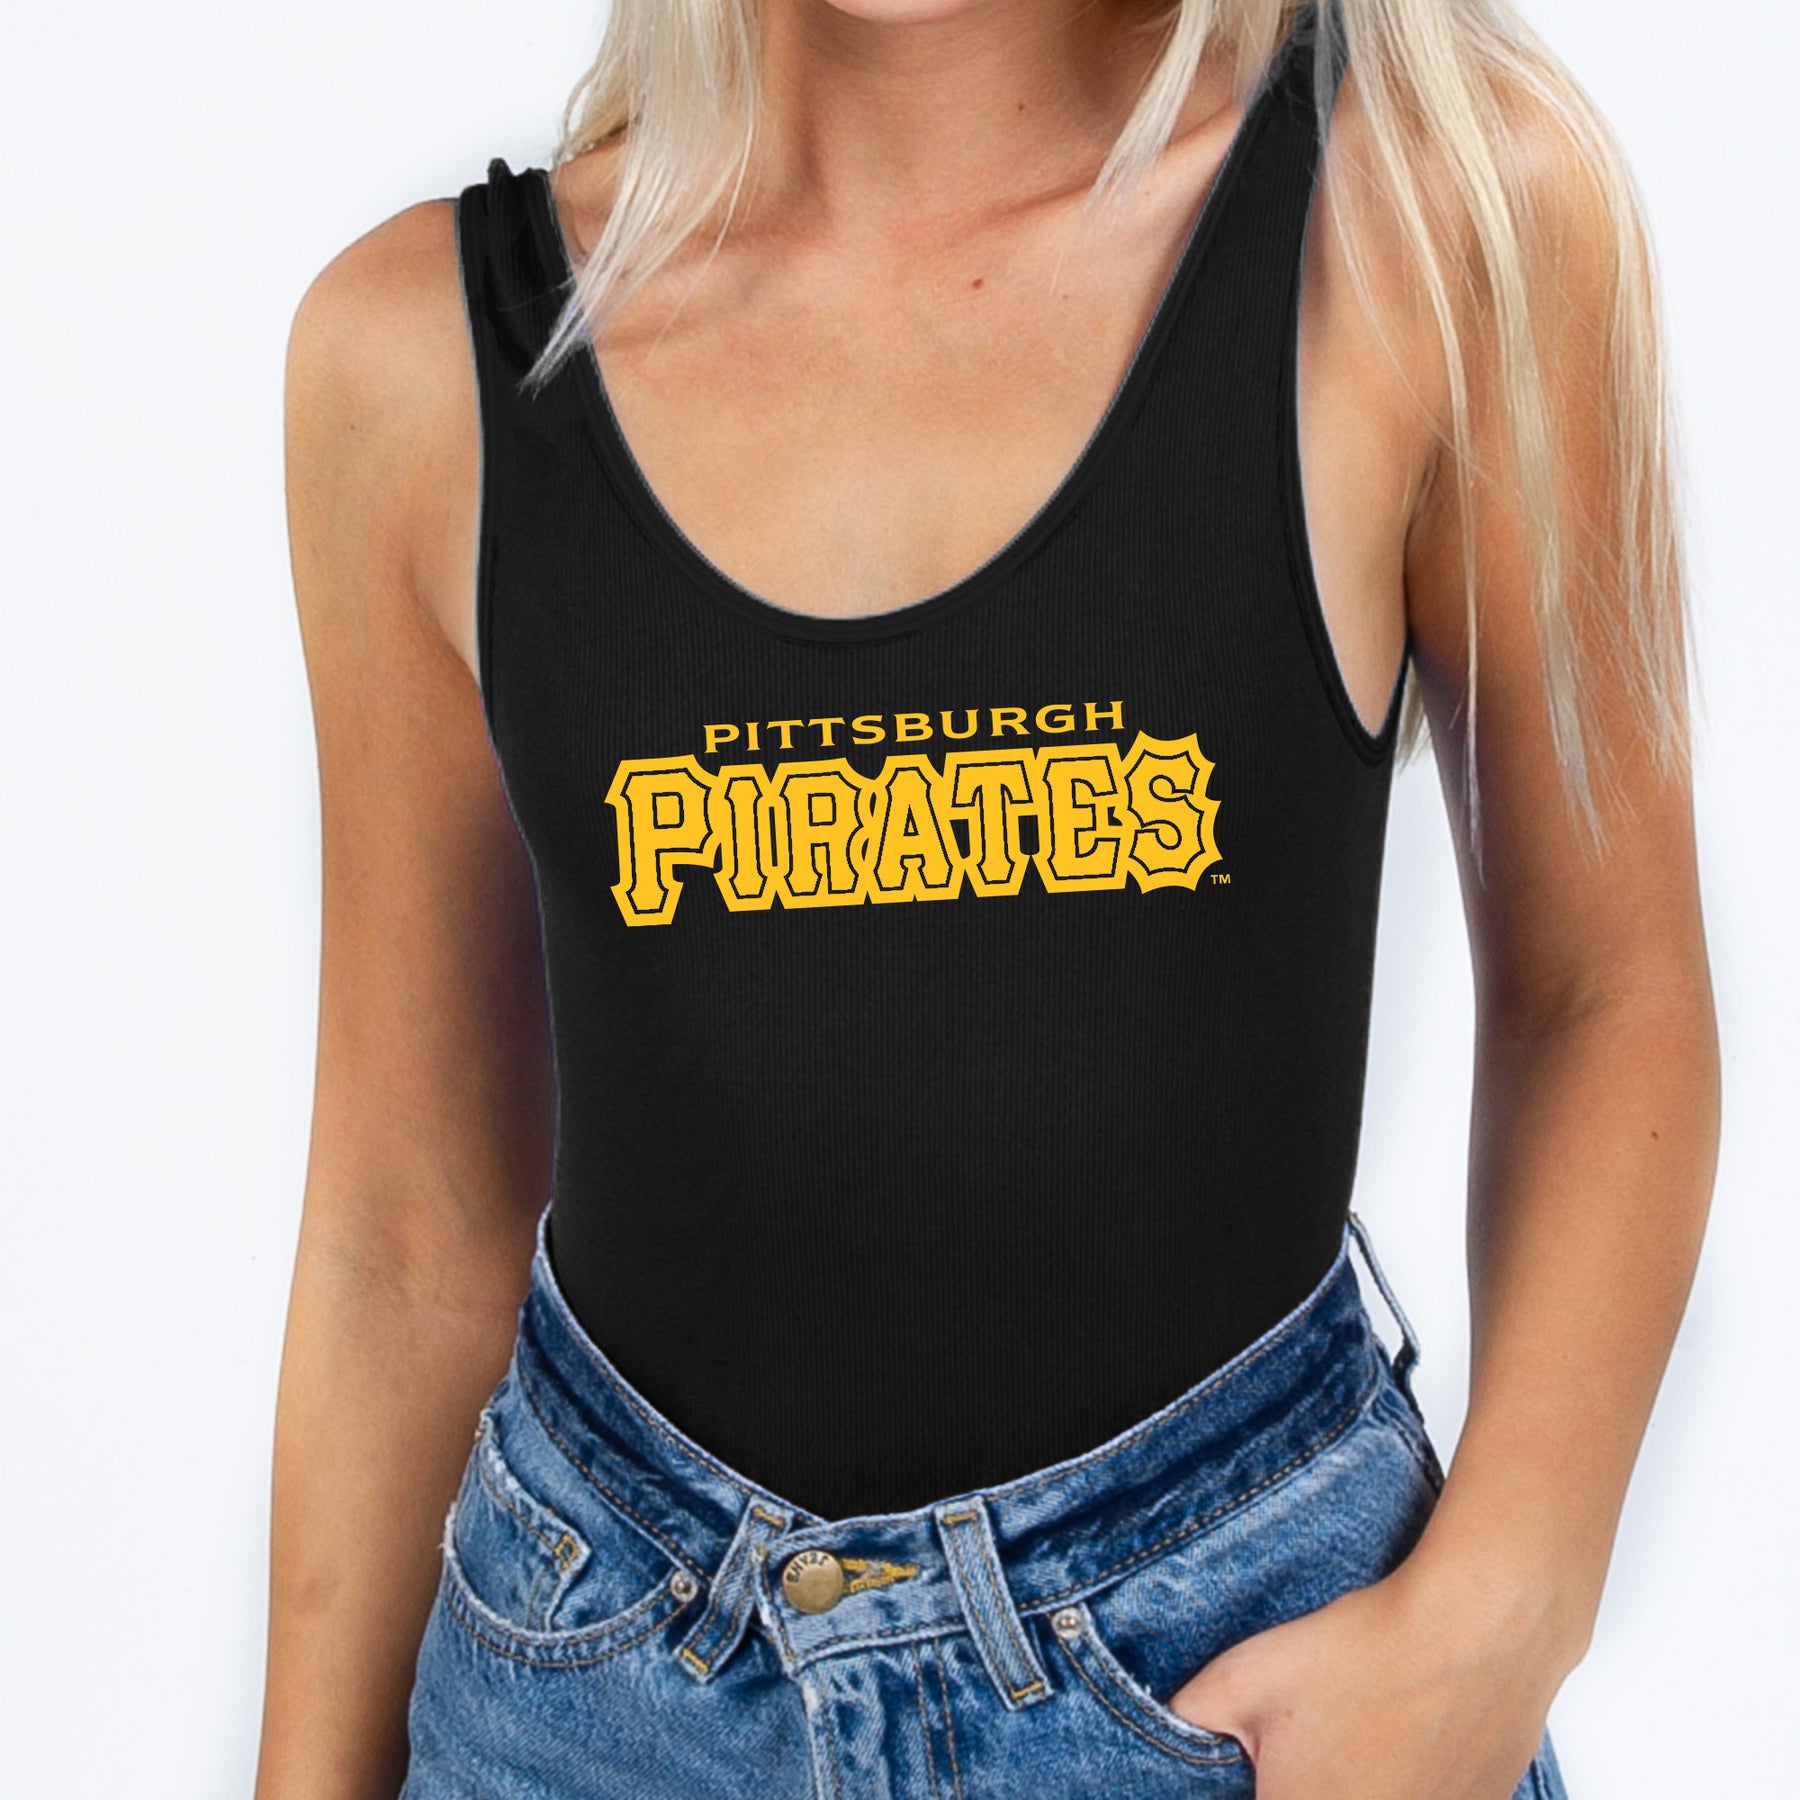 Pittsburgh Pirates Team Spirit Black Ribbed Bodysuit Medium/Large